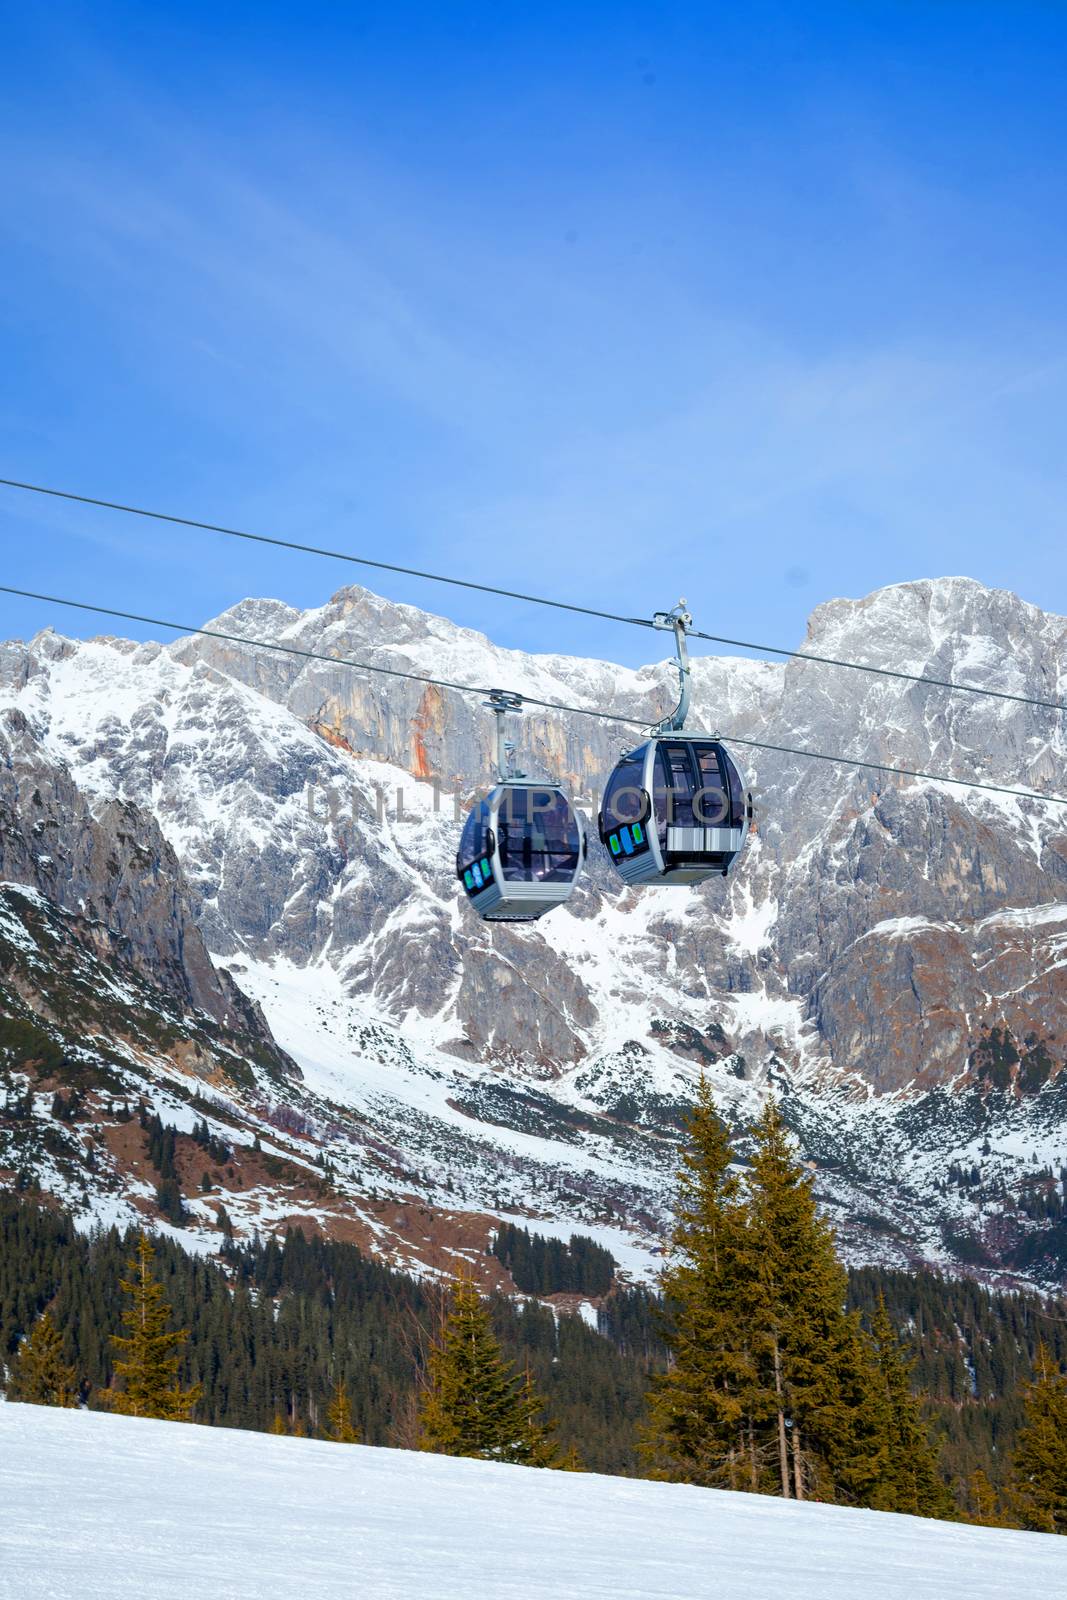 Ski resort in Austria by maxoliki